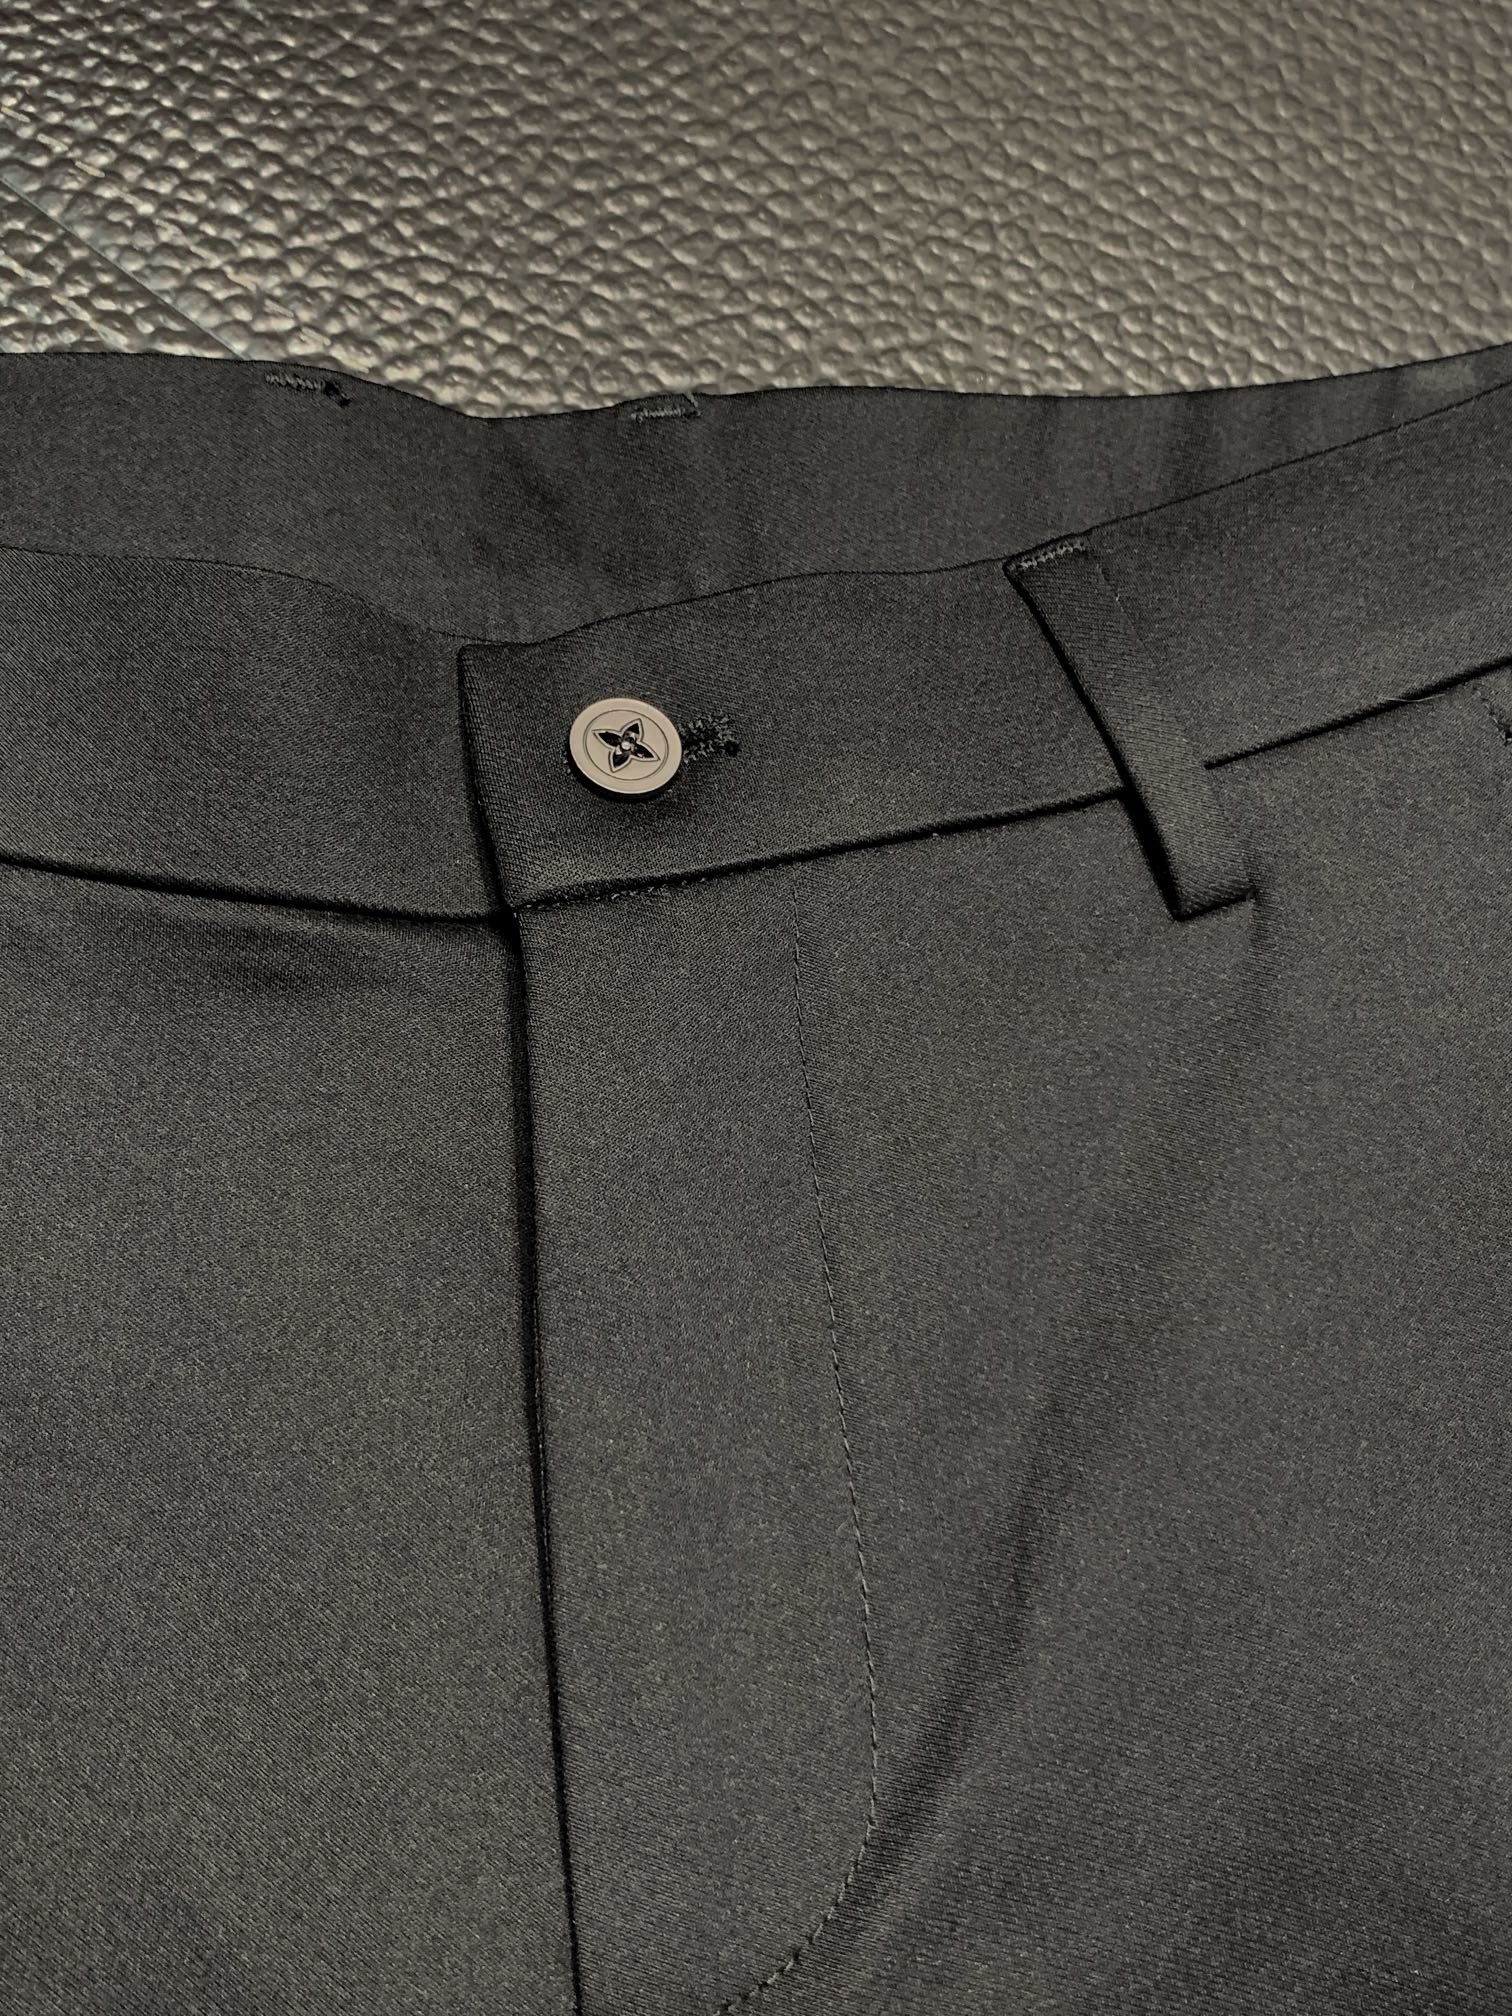 LV路易威登独家专供新款休闲西裤高端版本！专柜定制面料透气舒适度高细节无可挑剔品牌元素设计理念体现高品质